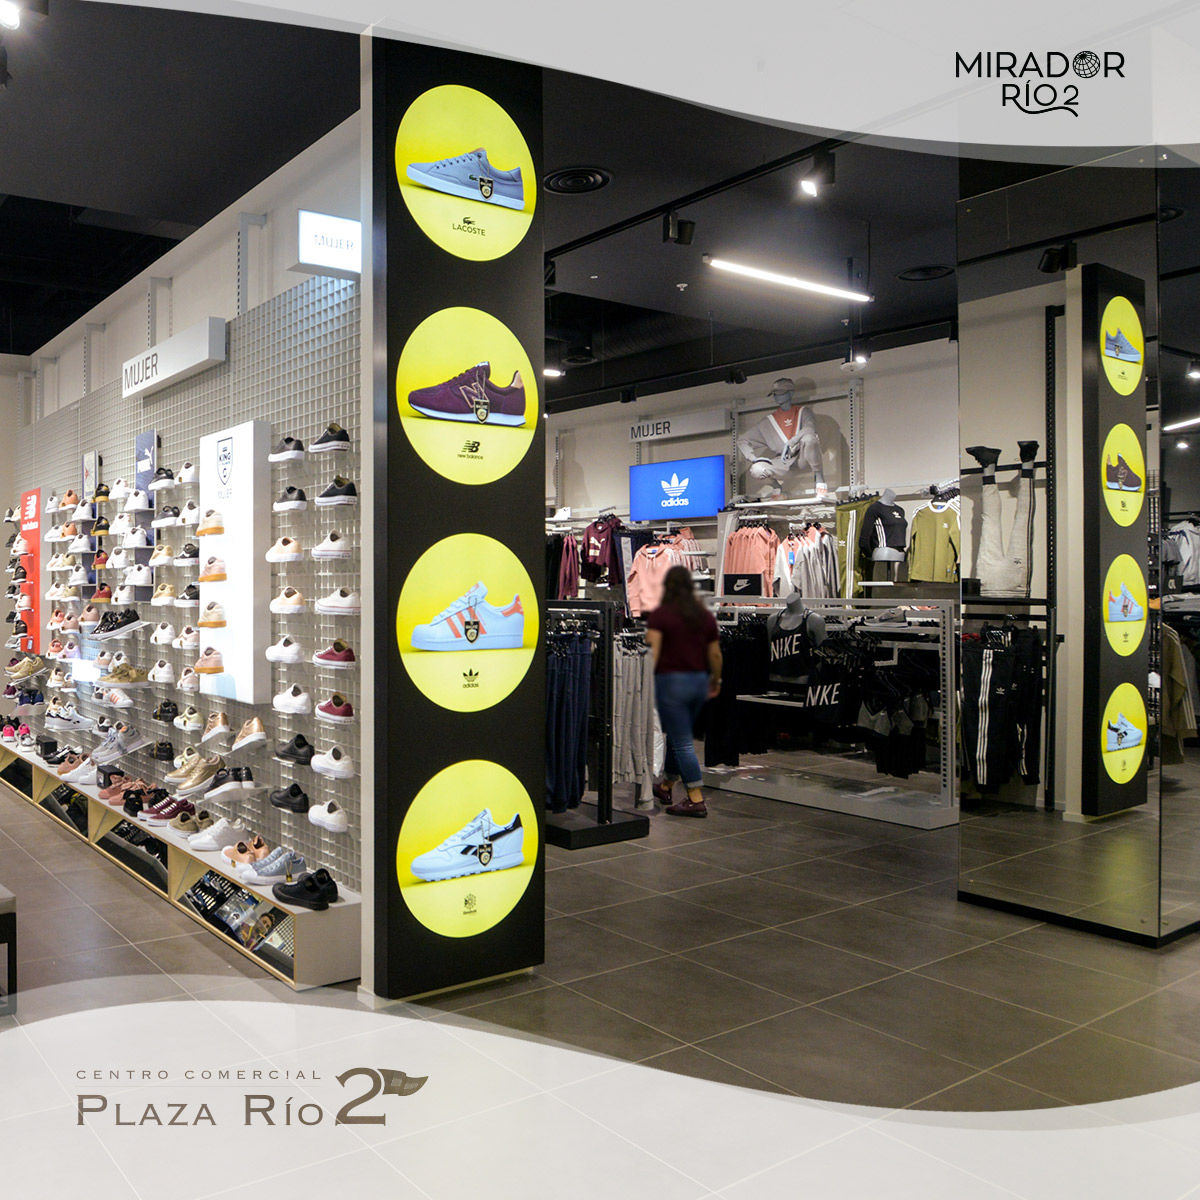 Rodeo fecha límite Arrugas Adidas Plaza Rio 2, Buy Now, Deals, 52% OFF, www.busformentera.com